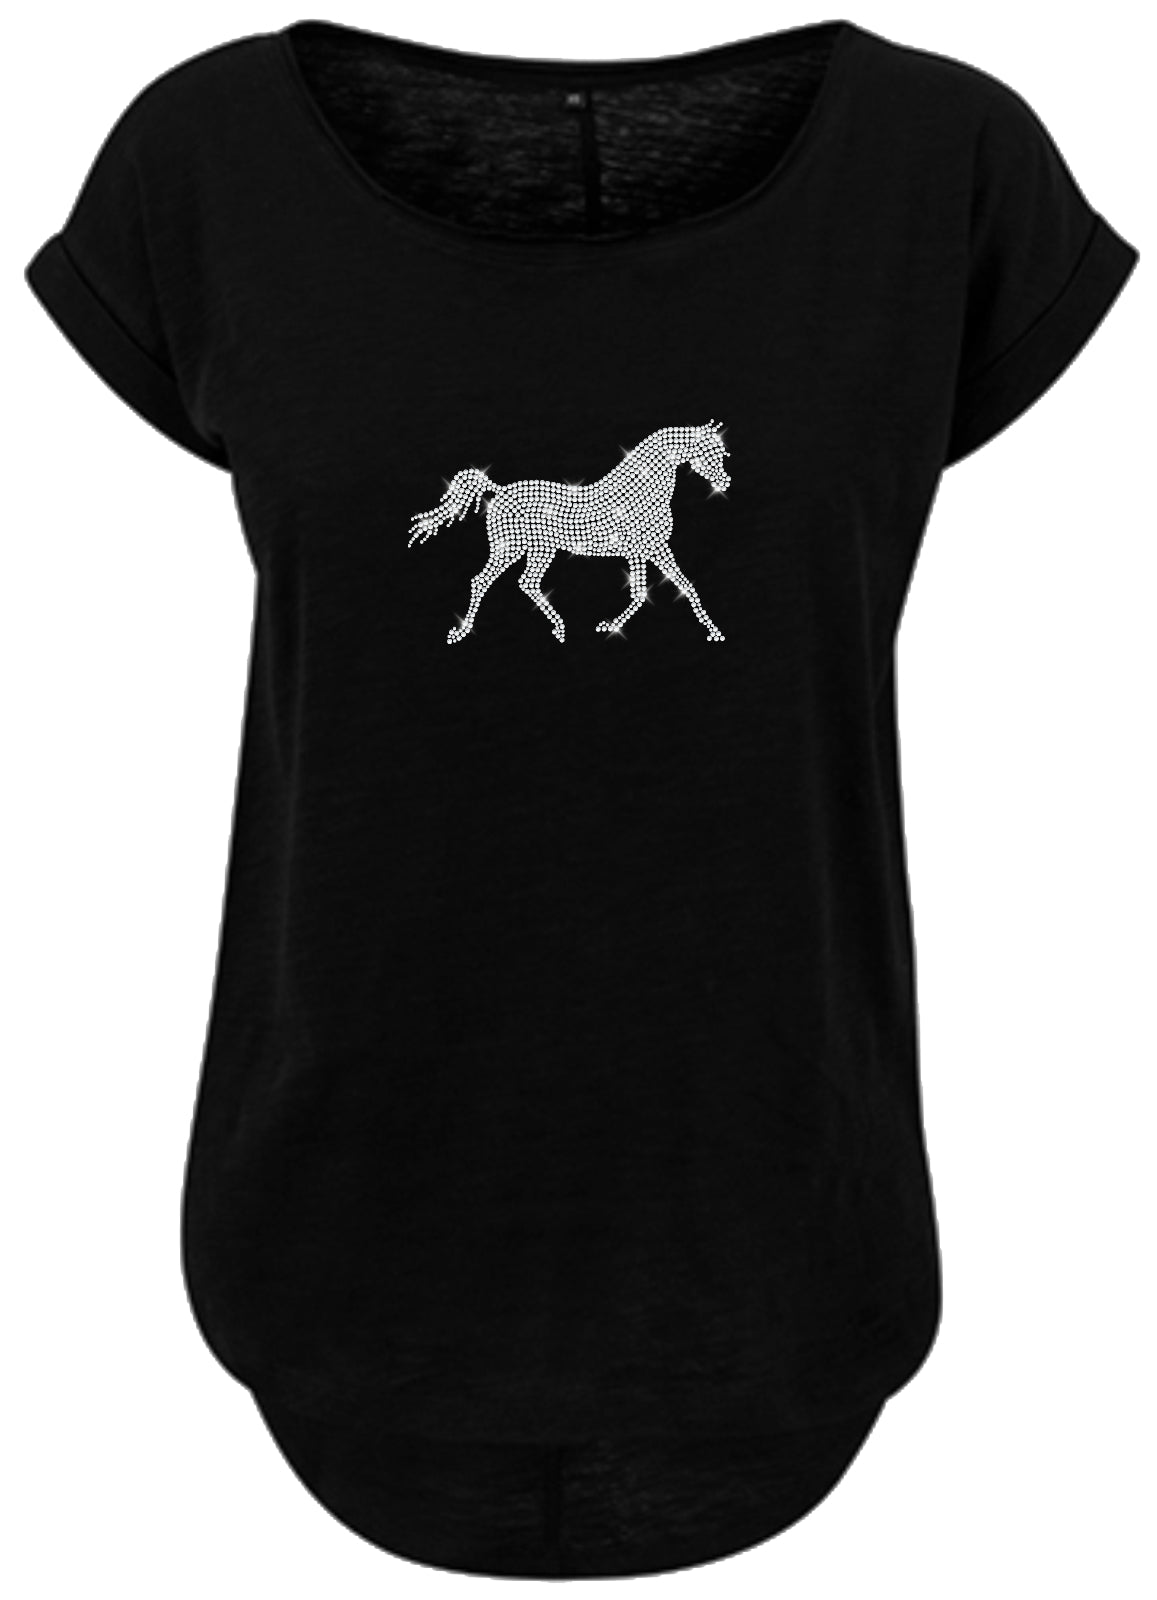 Blingeling®Shirts Damen T-Shirt   mit Pferd in Strass Silber beim Reiten für Reiterin